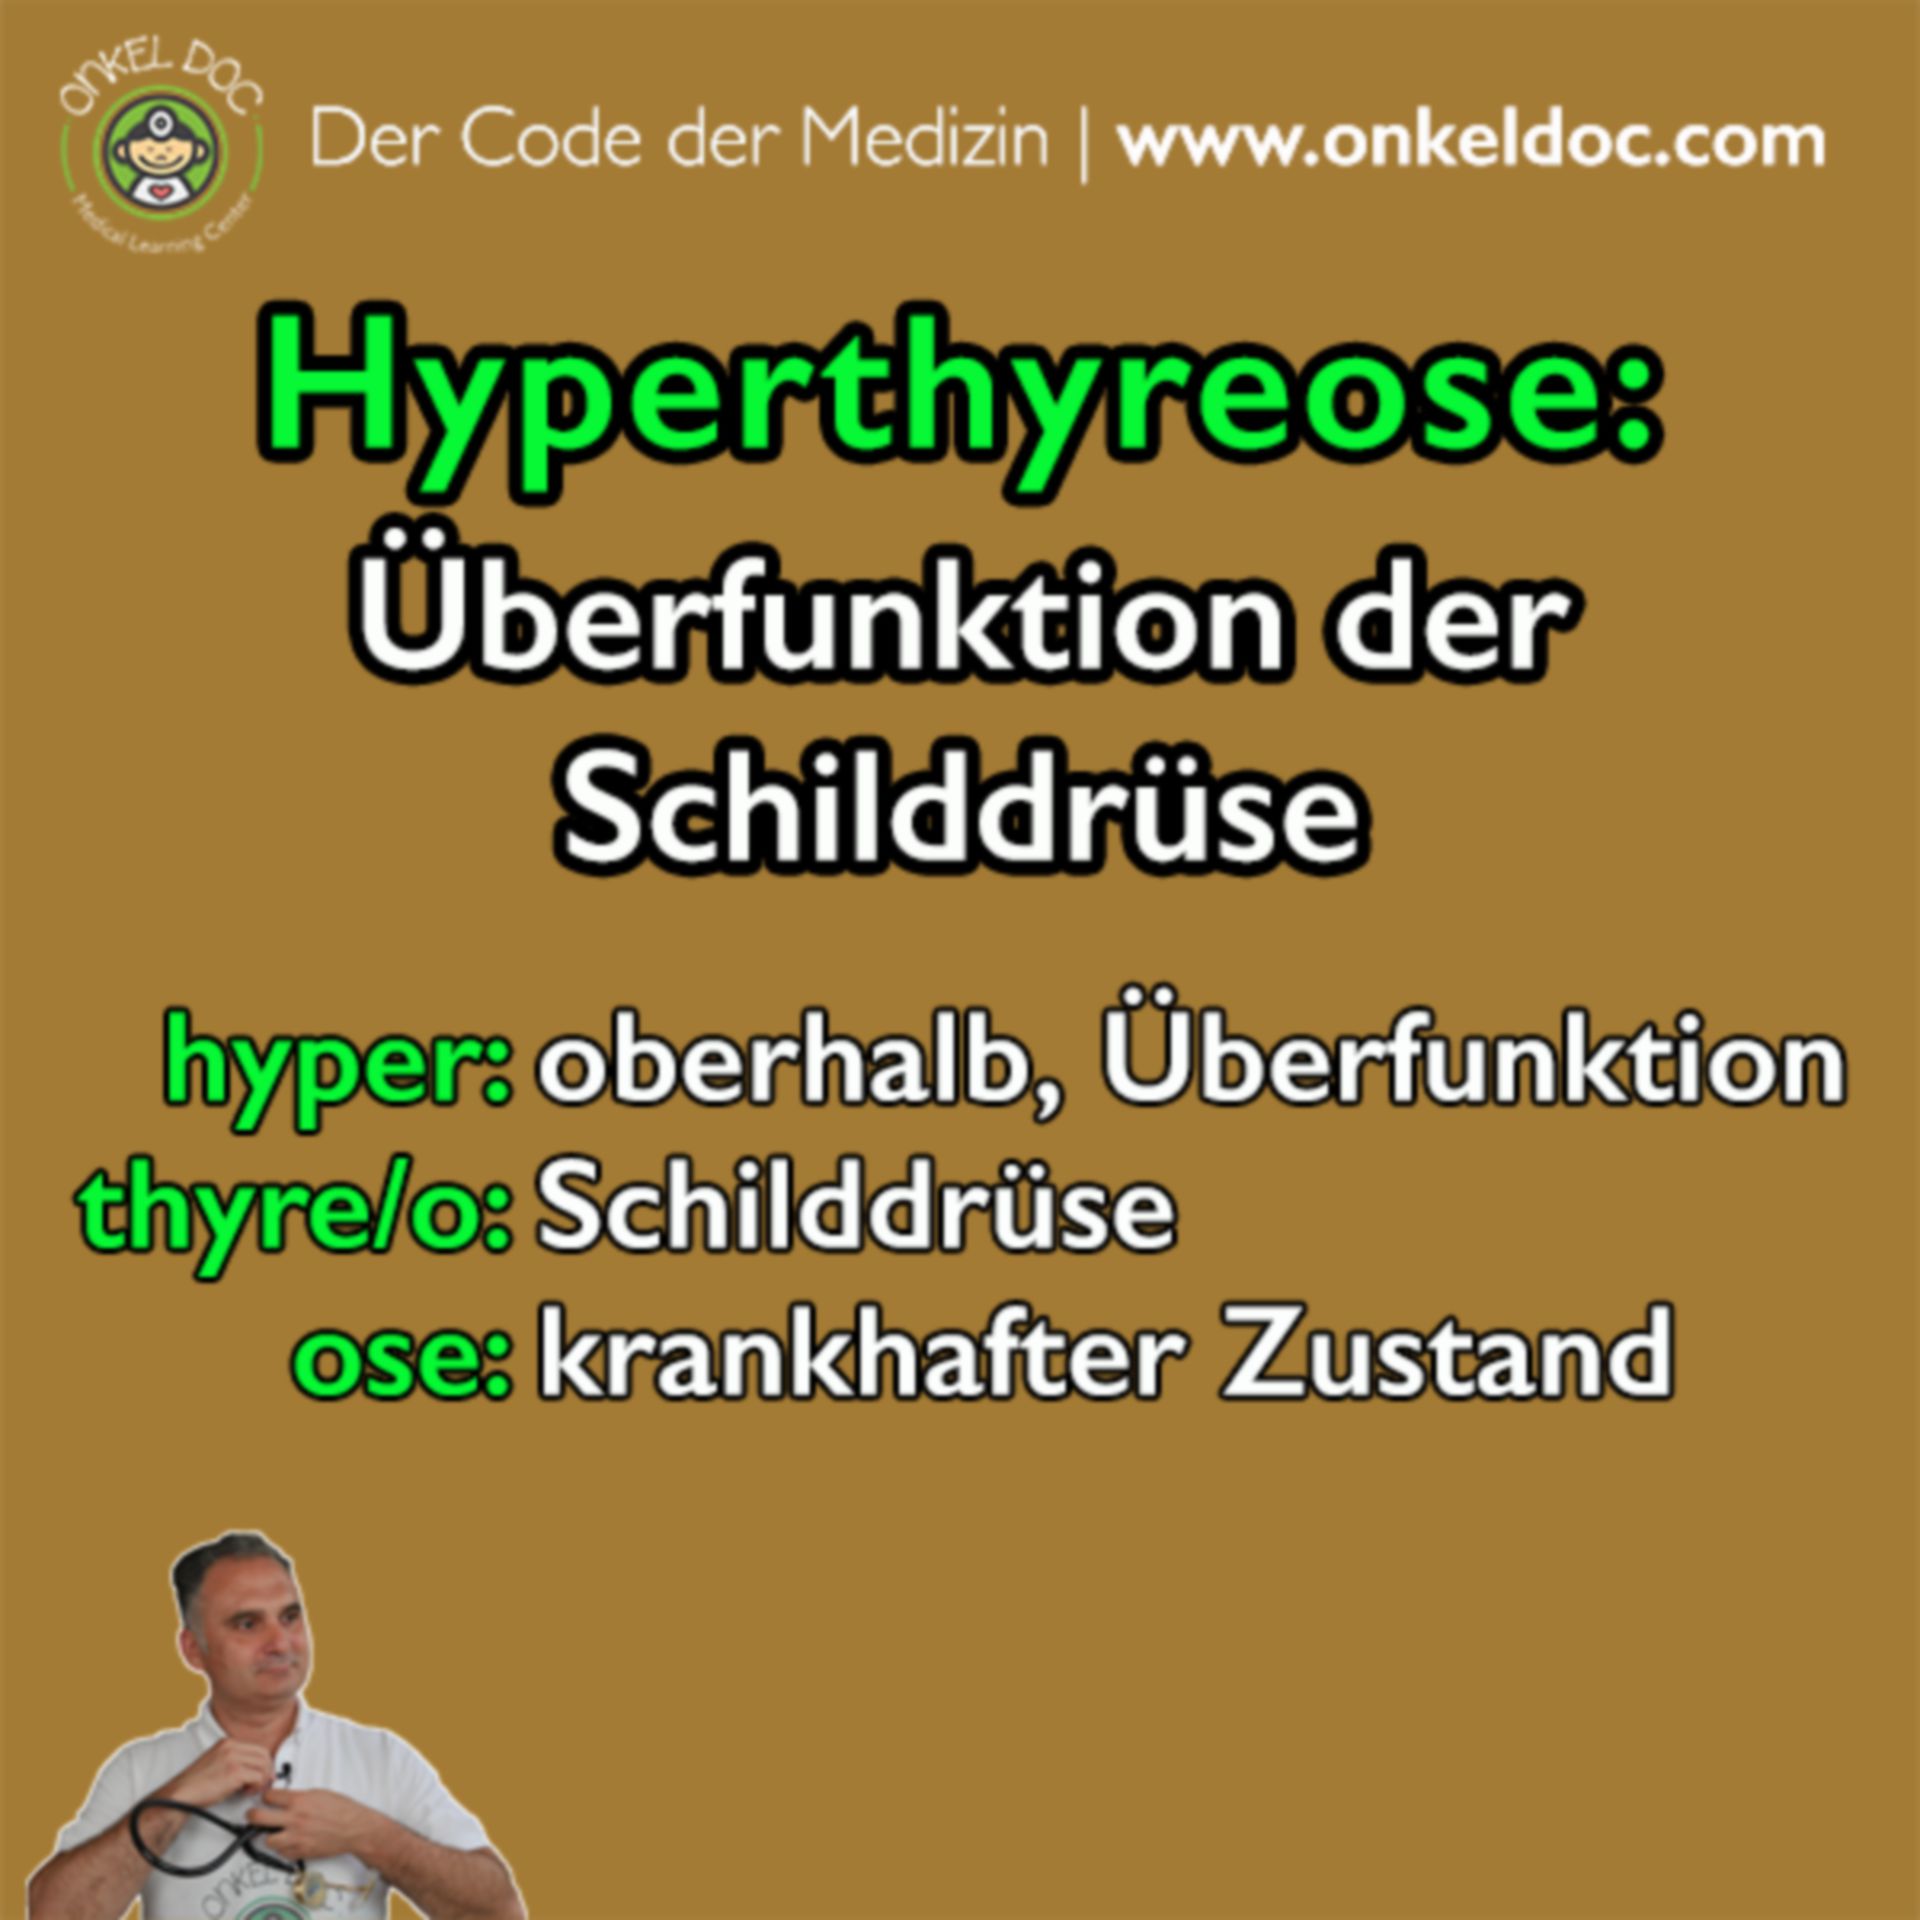 Der Code der Hyperthyreose